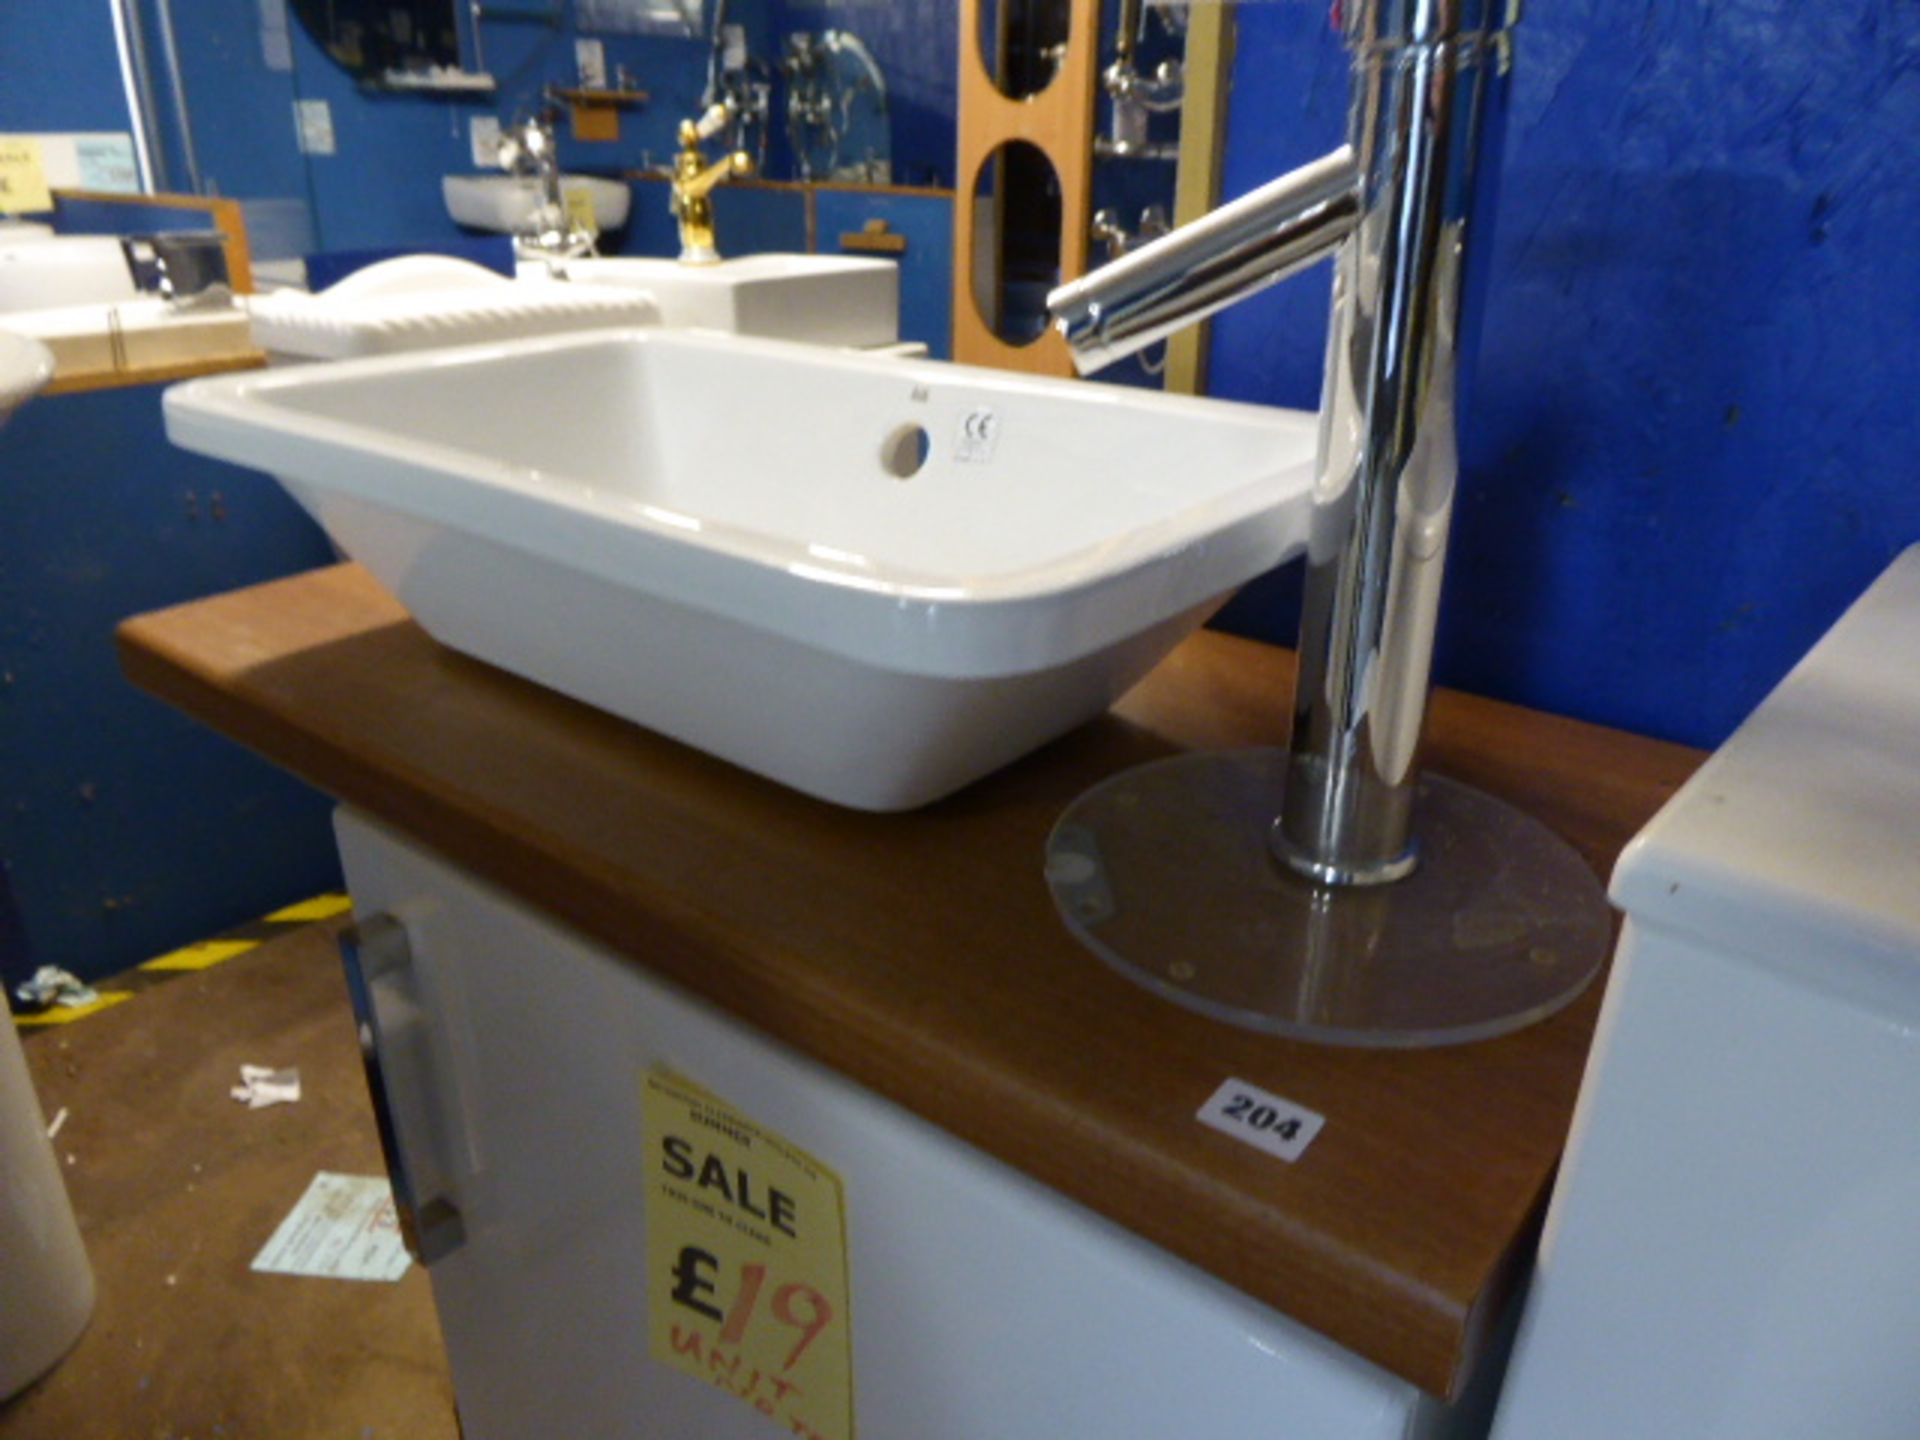 Small single door vanity base unit with RAK Rectangular ceramic basin and pillar mixer tap - Image 2 of 2